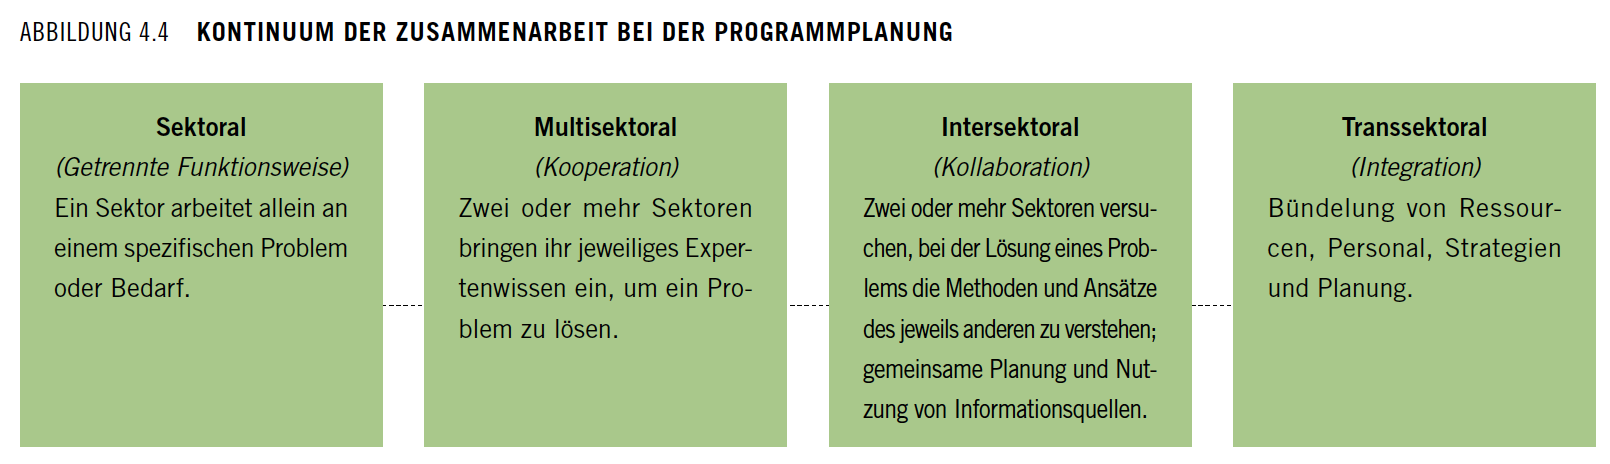 Abbildung 4.4 Kontinuum der Zusammenarbeit bei der Programmplanung